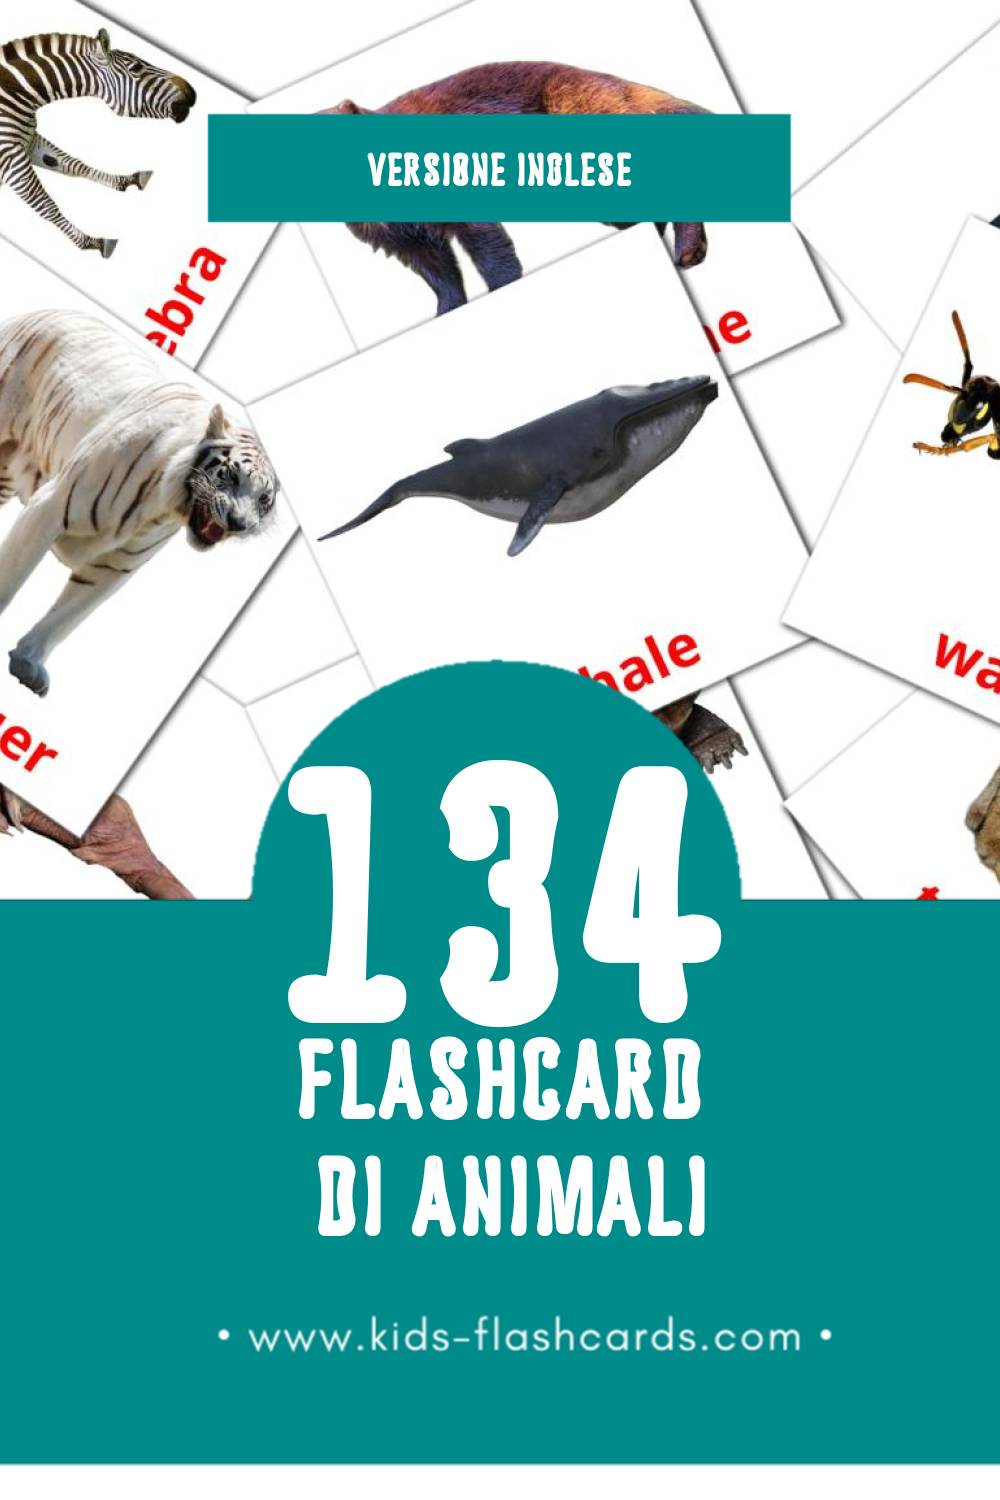 Schede visive sugli Animals per bambini (134 schede in Inglese)